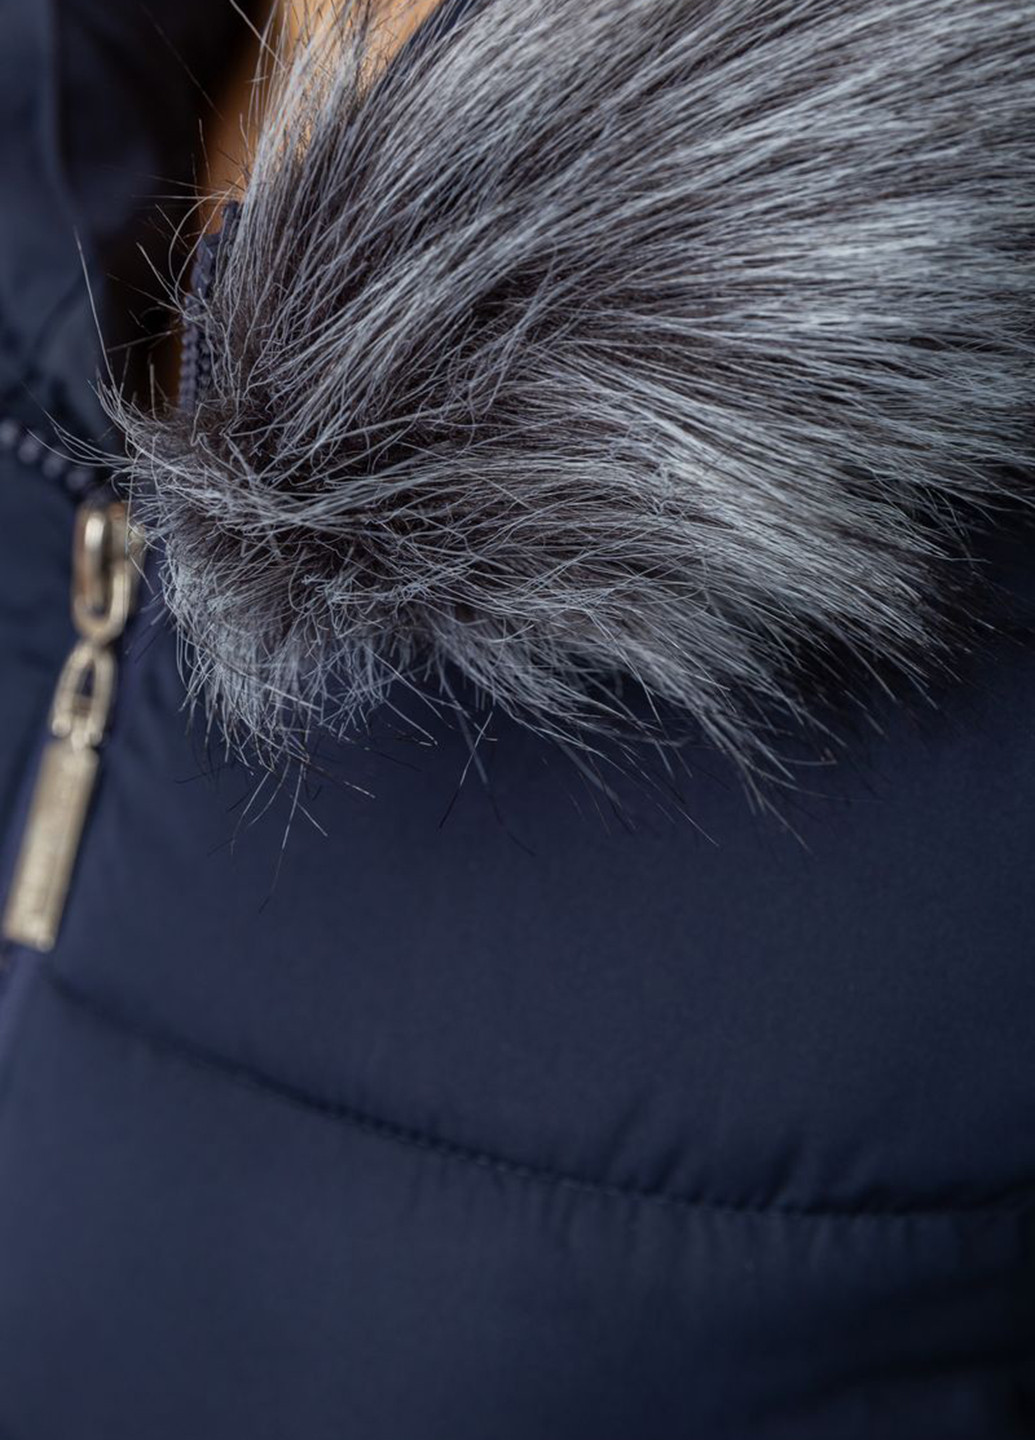 Темно-синяя зимняя куртка Ager